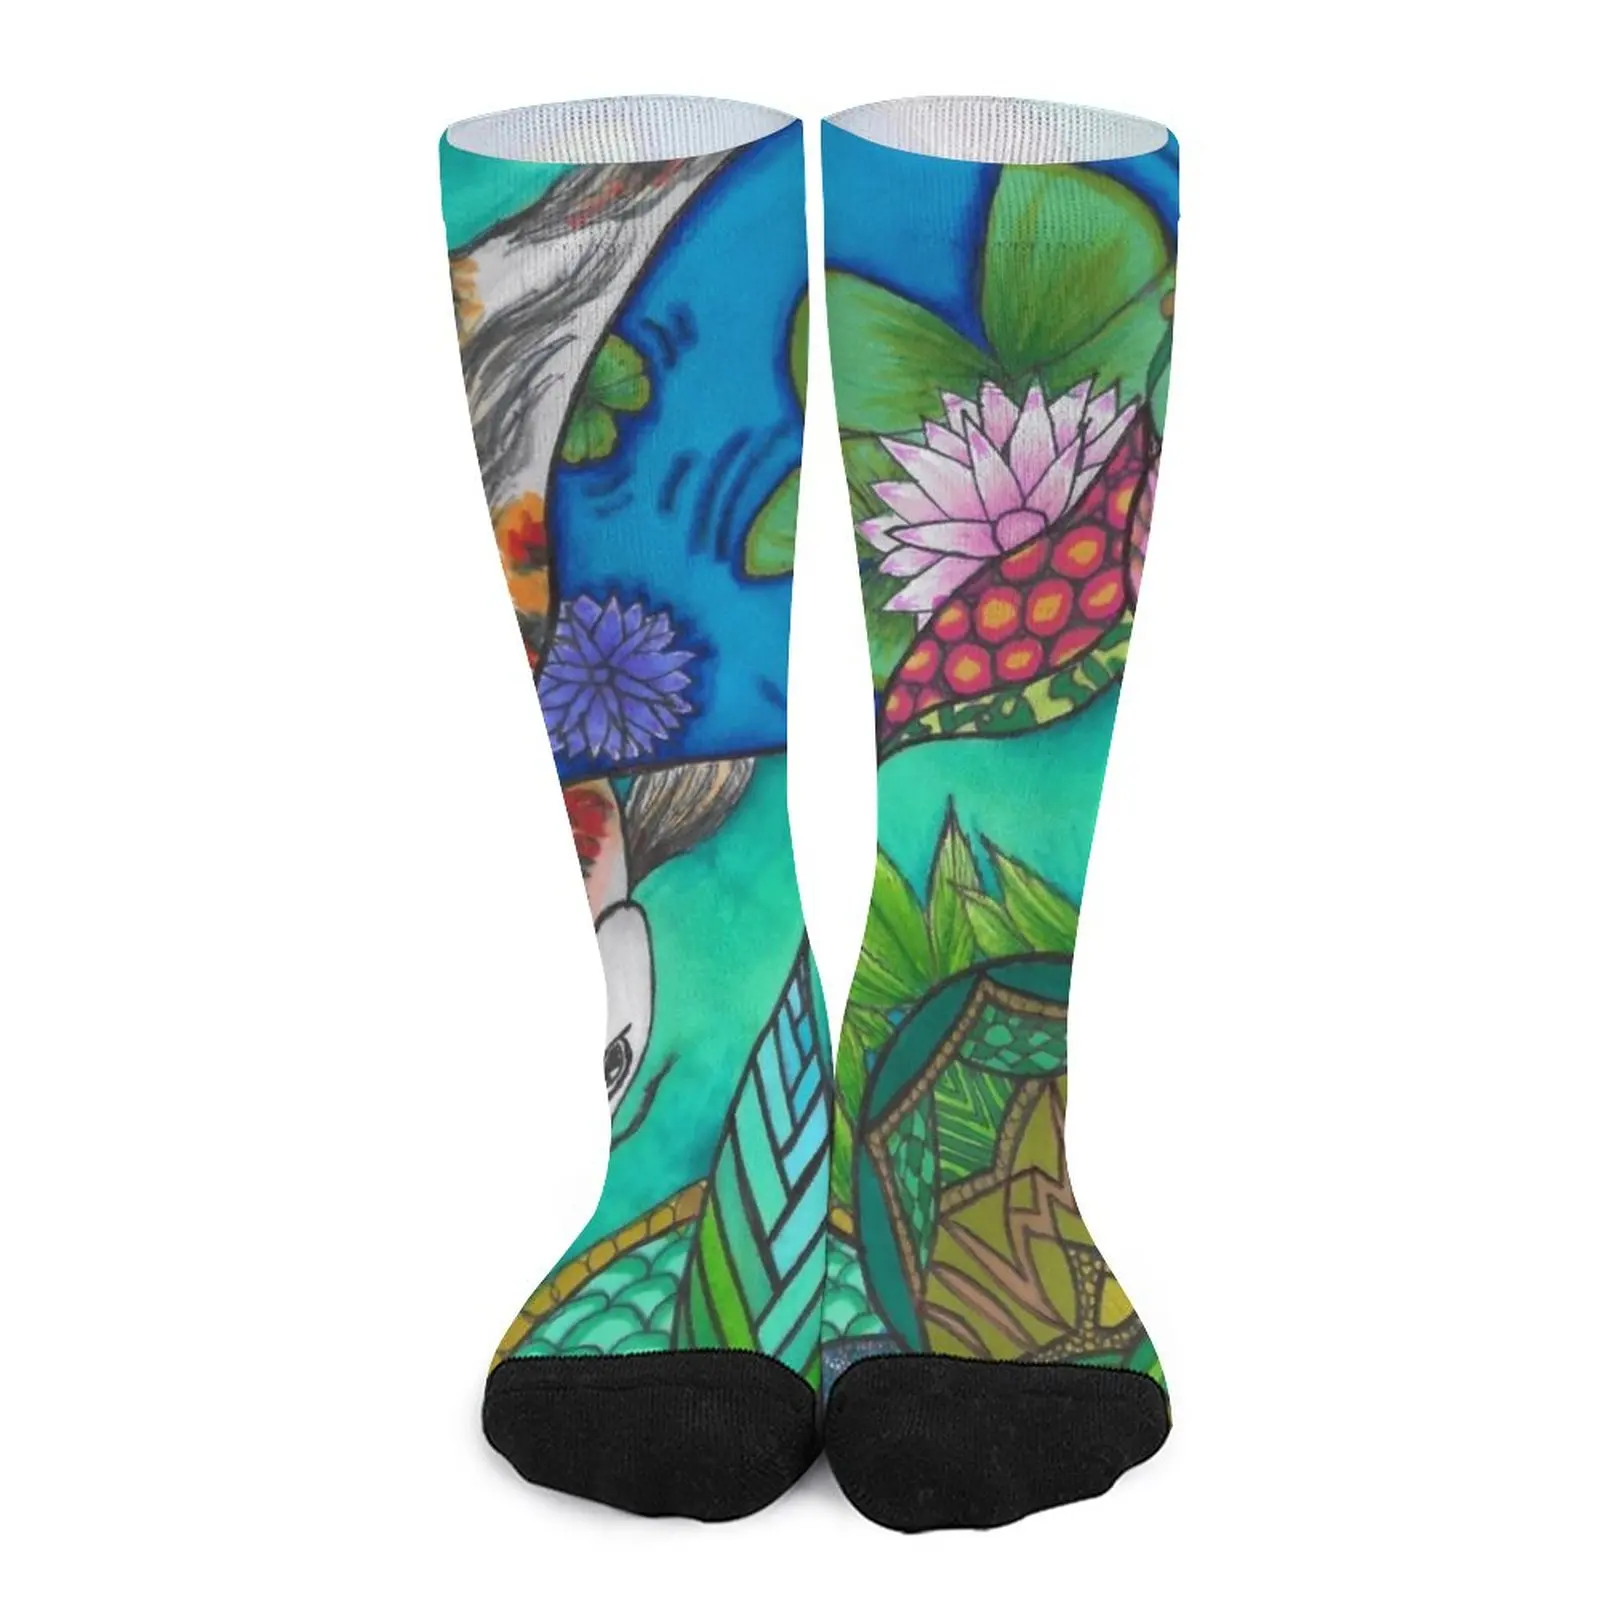 Koi Design Socks stockings for men Wholesale socks for men new in Men's socks wholesale